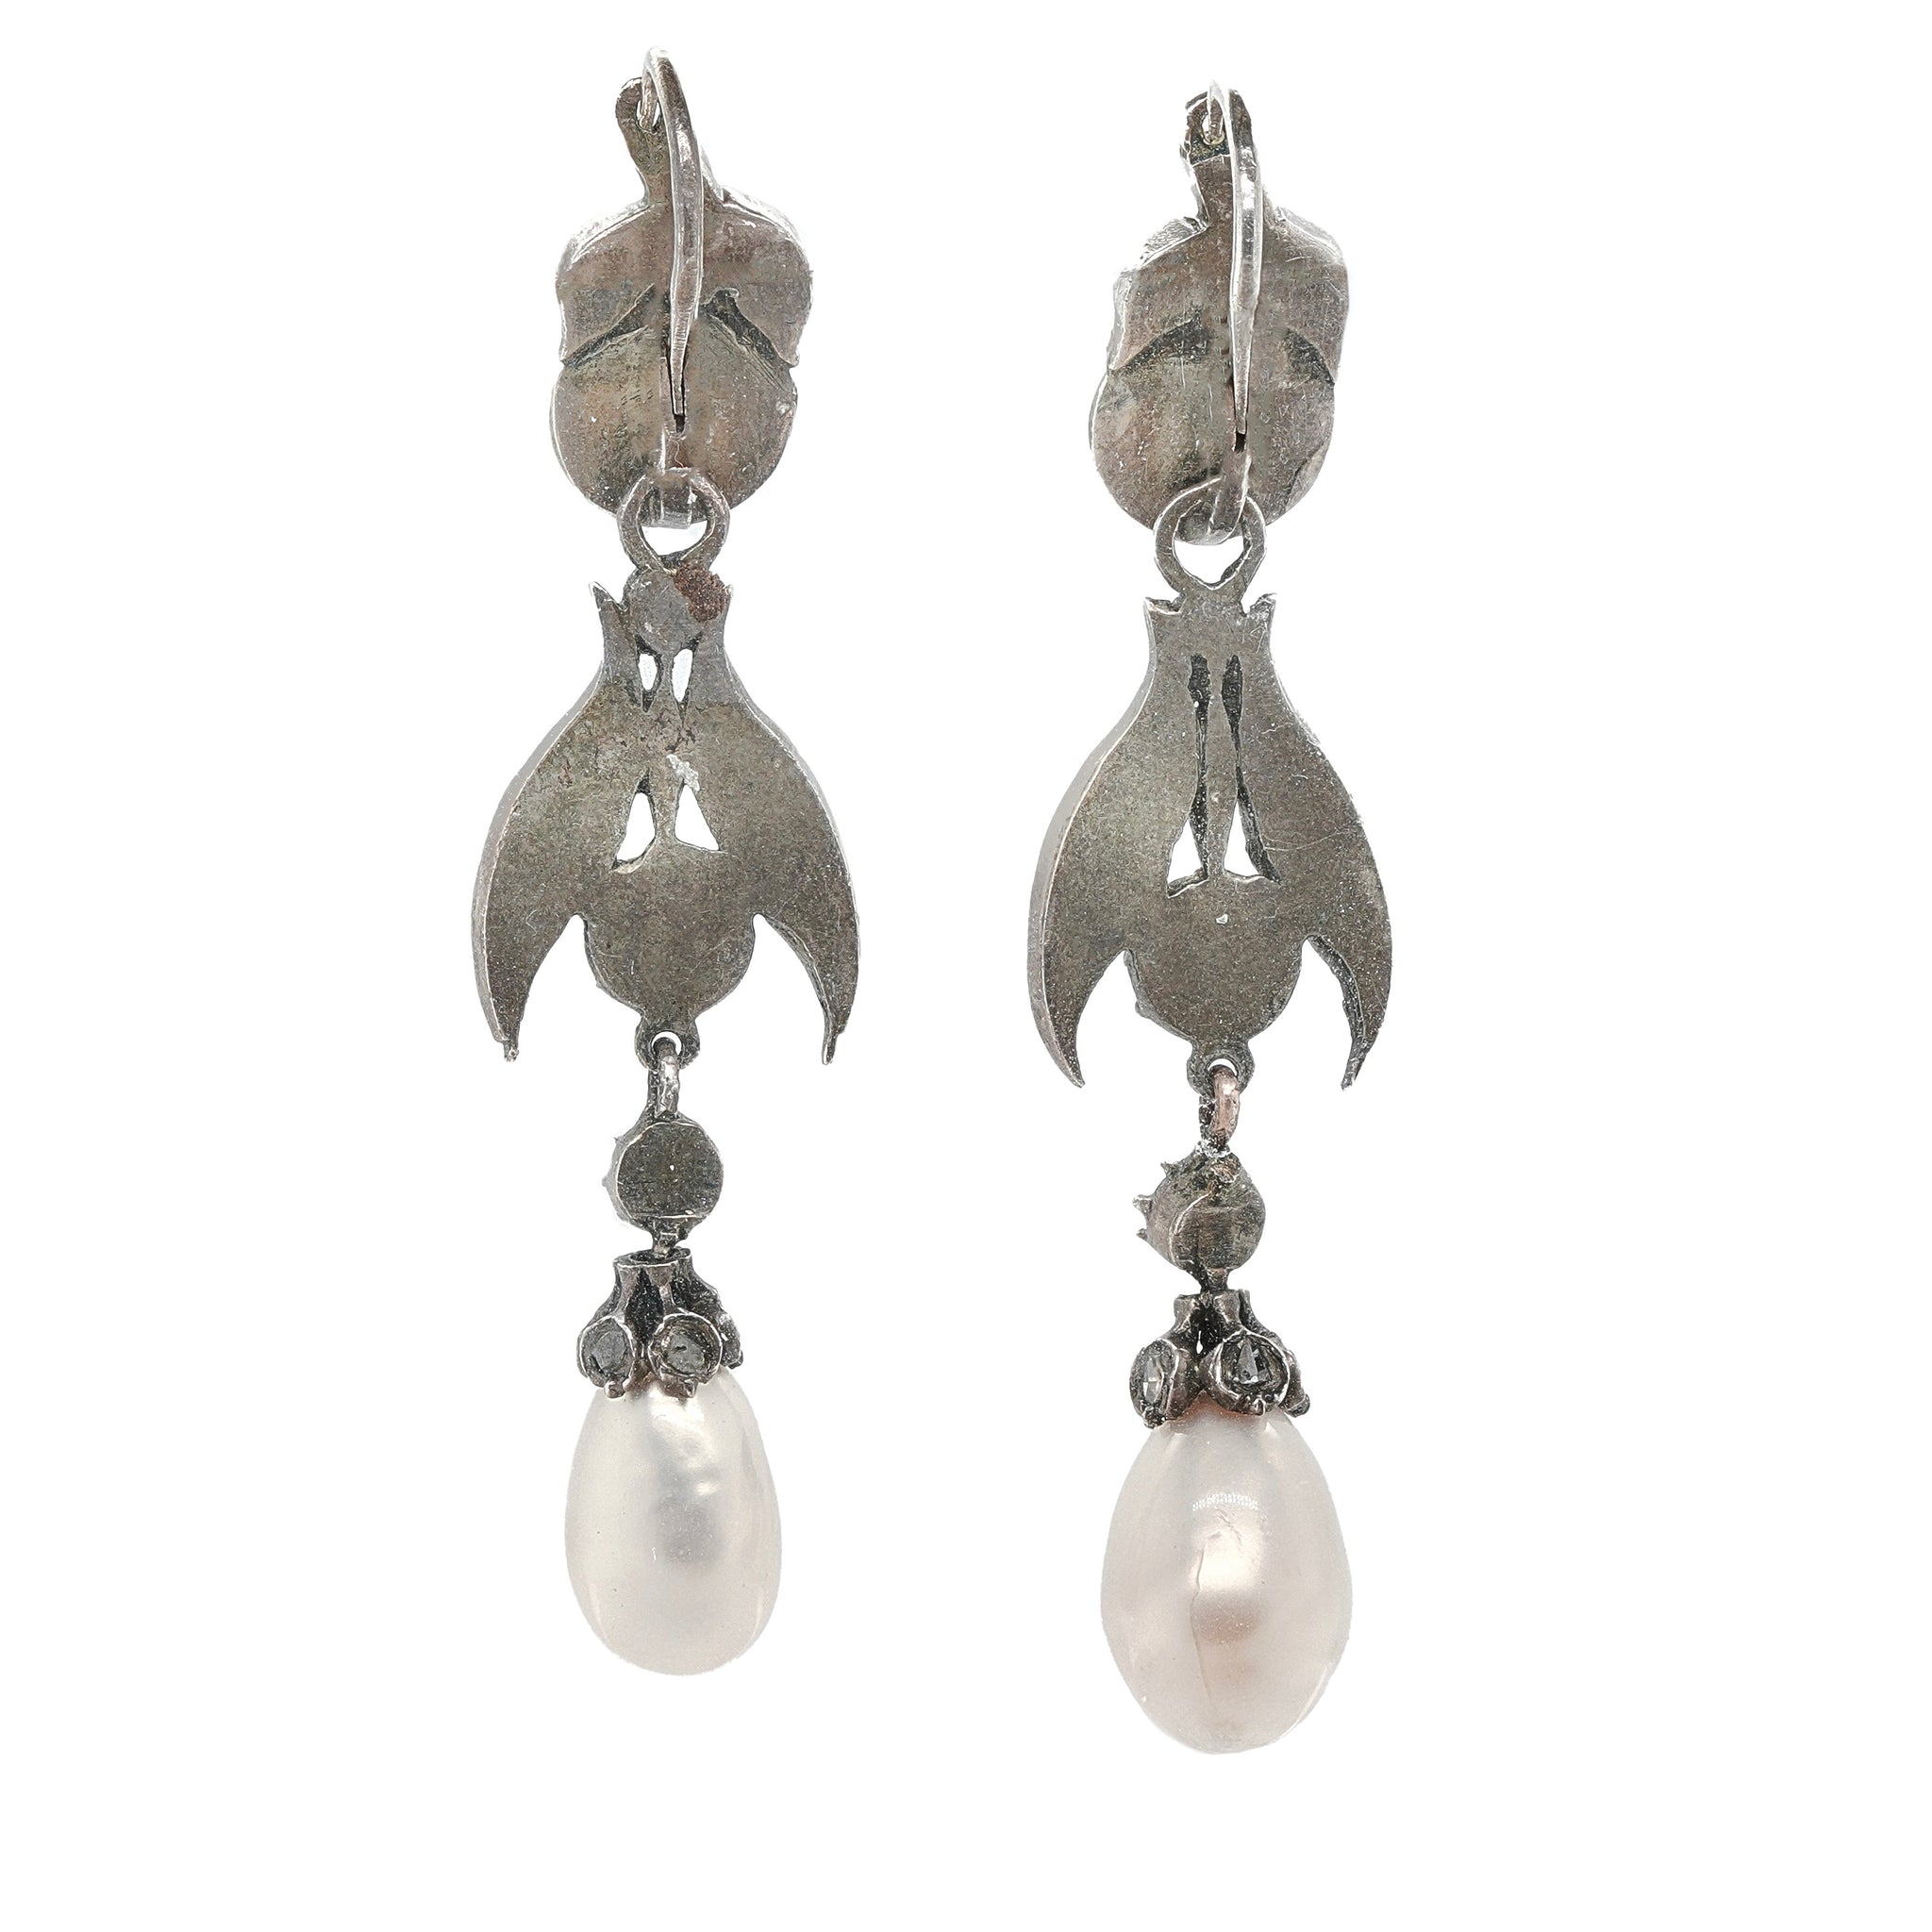 Georgian Pearl and Diamond Drop Earrings